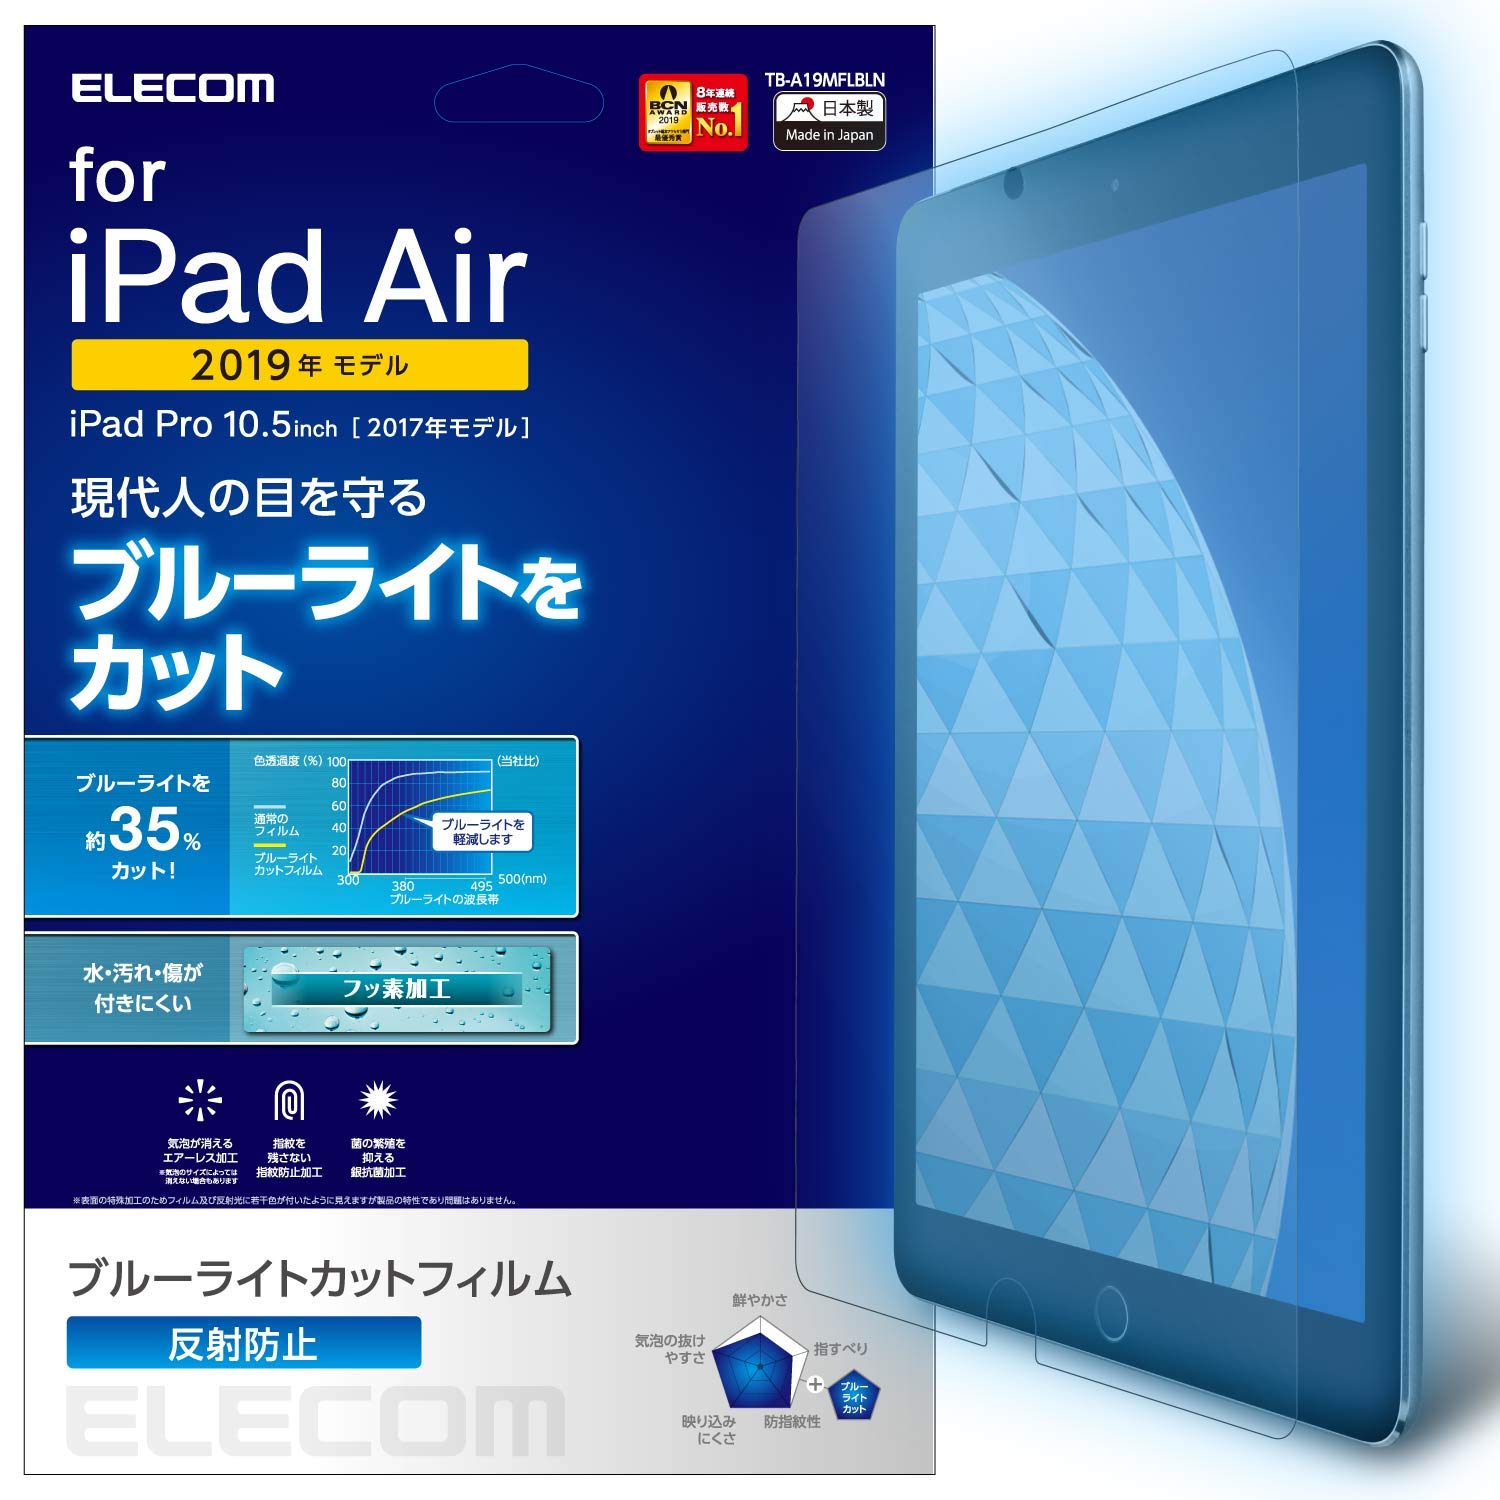 RAGR iPad Air 10.5 (2019)AiPad Pro 10.5 (2017) tB u[CgJbg ˖h~ TB-A19MFLBLN